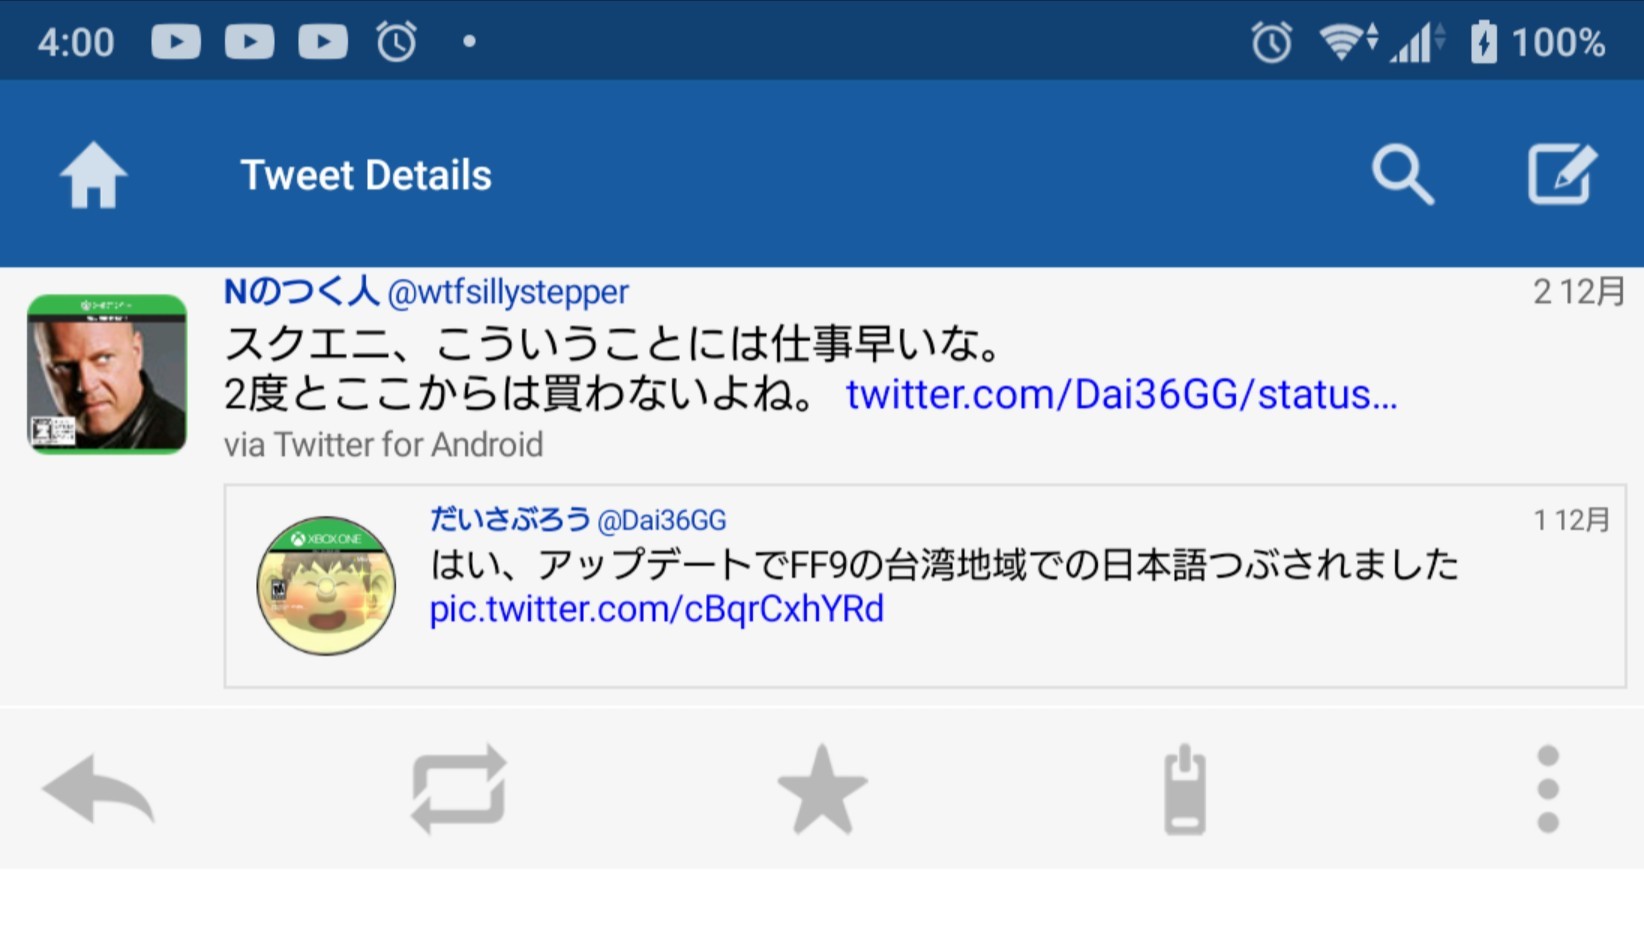 スクエニがxboxユーザーのローカライズ泥棒に激怒 Ff9台湾版から日本語を削除してしまう Mutyunのゲーム Aブログ